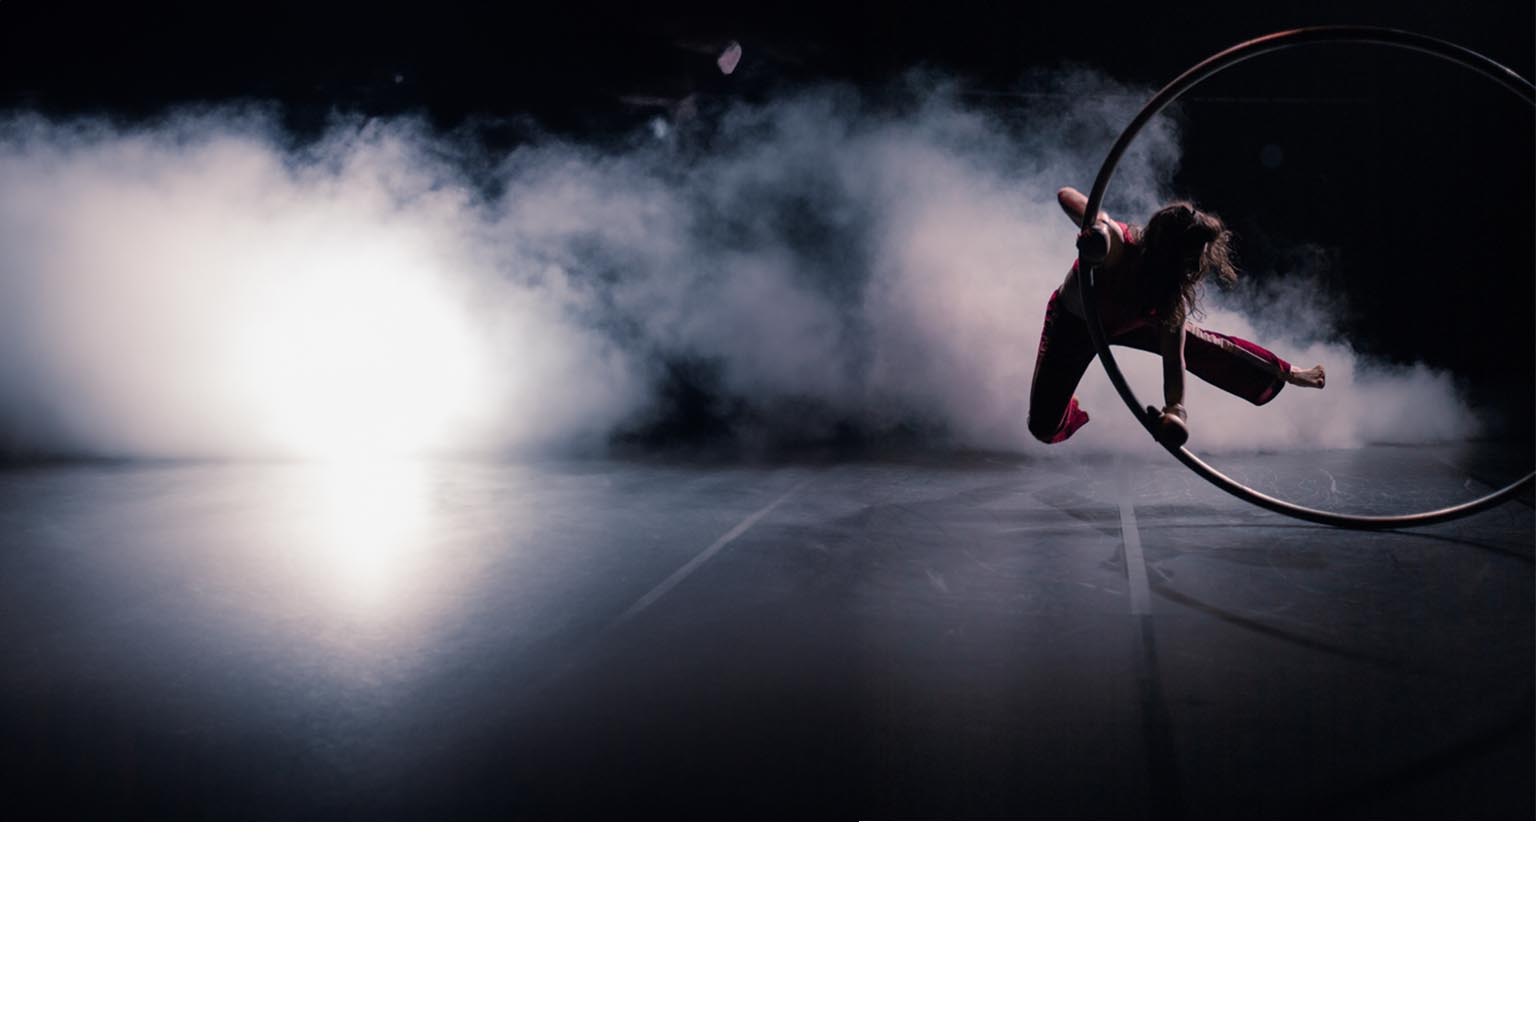 Lontano / Instante spectacle de cirque danse paris theatre du rond-point